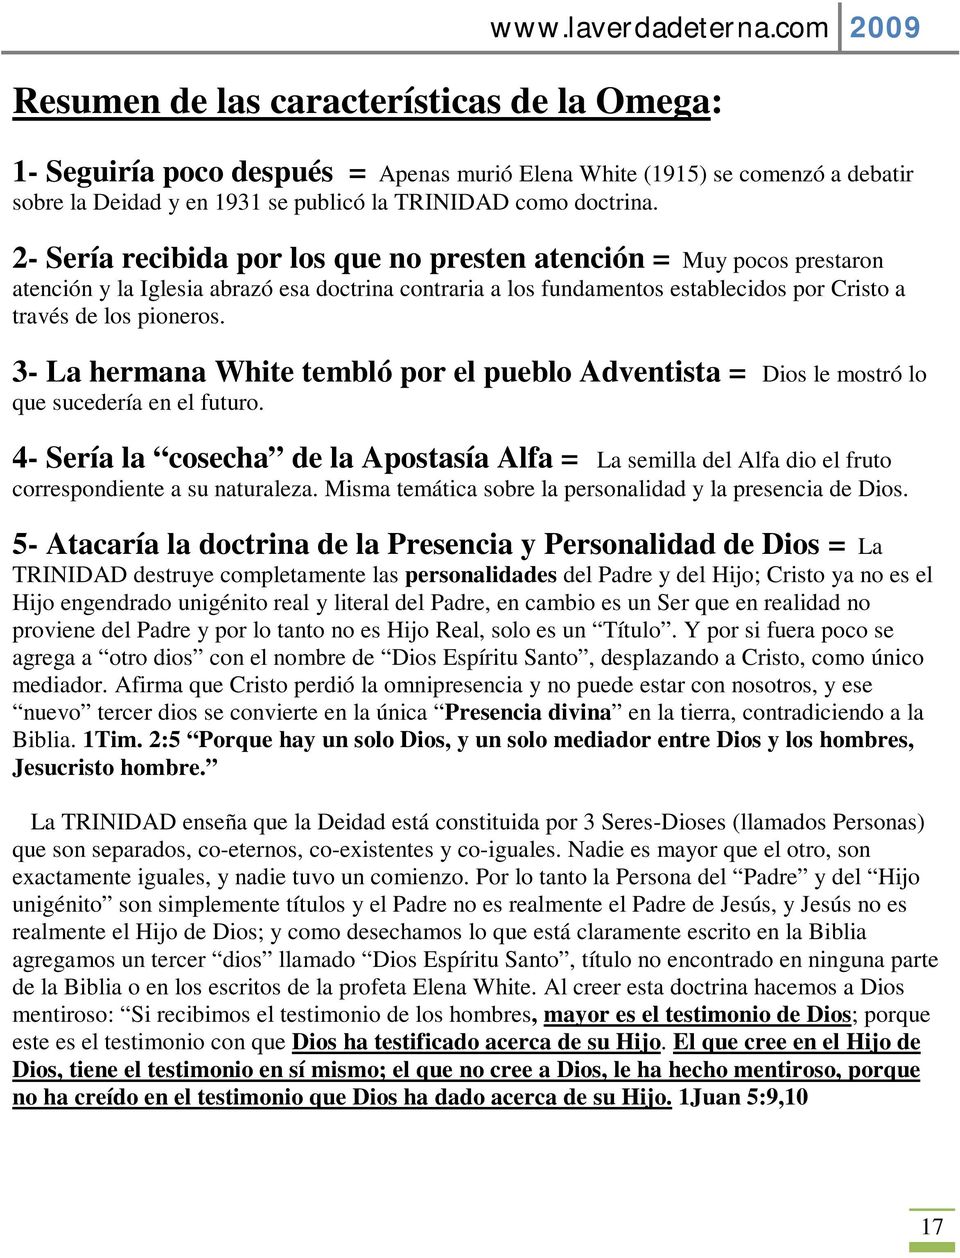 LA APOSTASÍA ALFA Y OMEGA - PDF Free Download